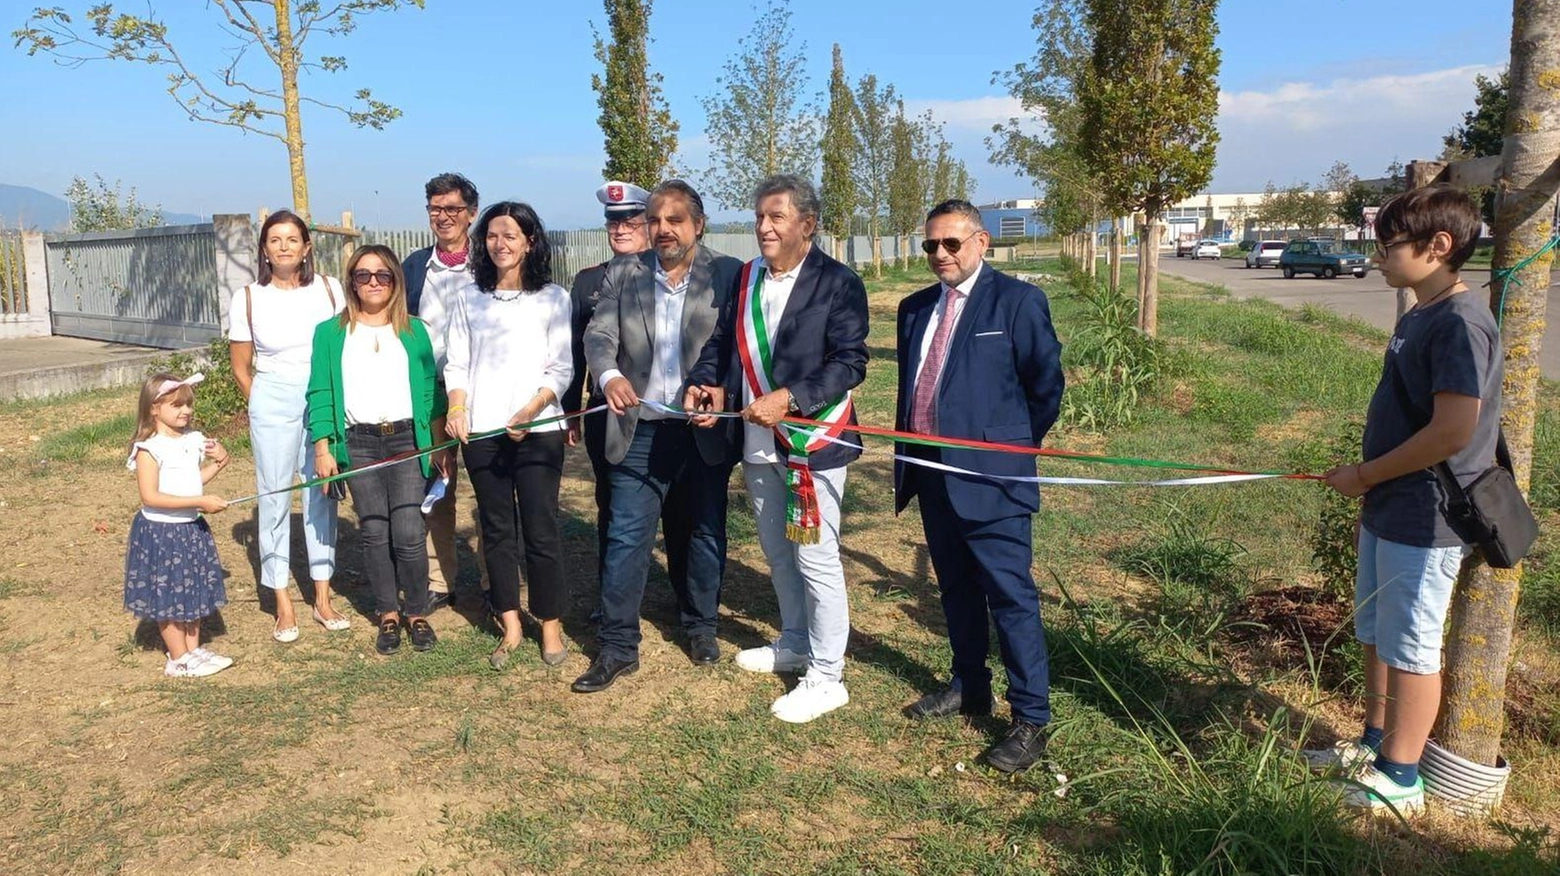 

Parcheggio e 1.200 alberi a Montopoli: forestazione urbana per la qualità dell'aria